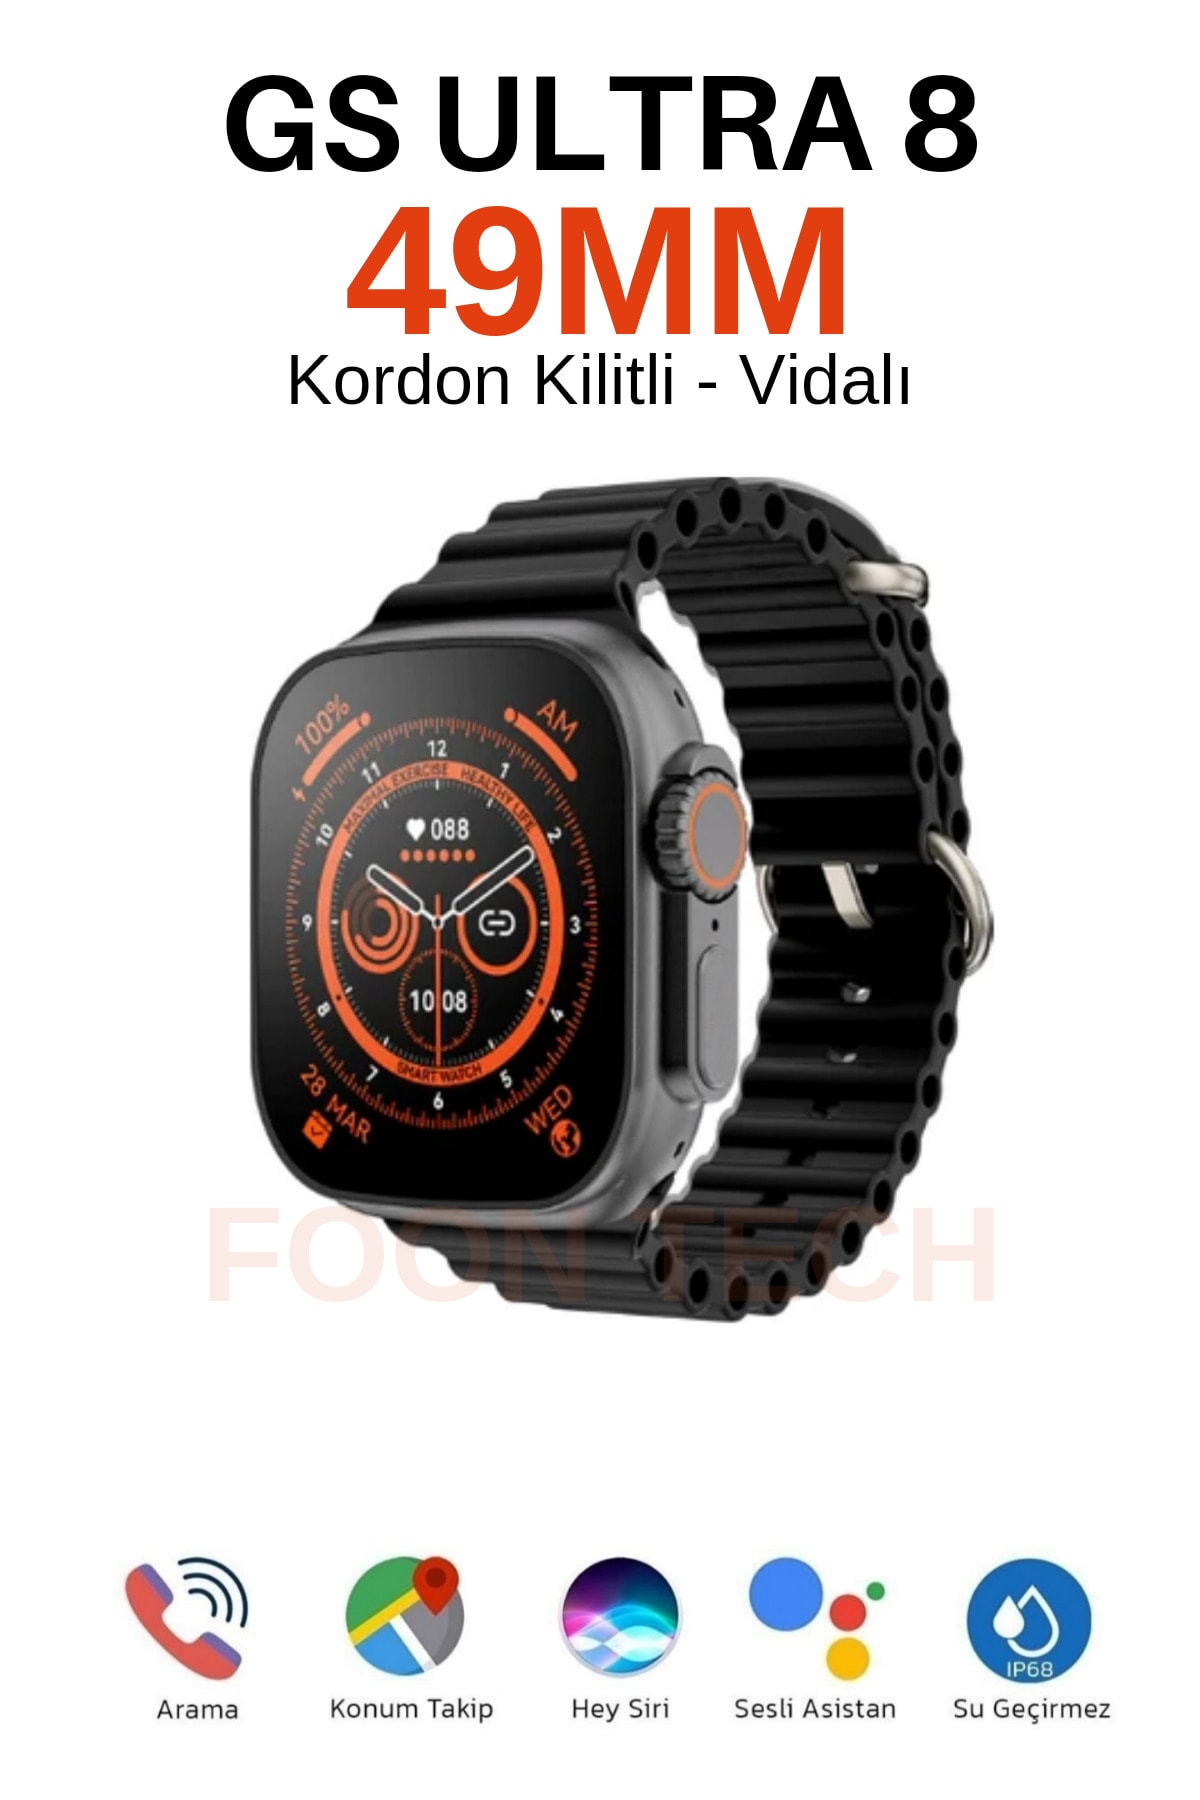 Foon Watch Gs Ultra 8 49mm Kordon Kilitli Vidalı 2.08 Ekran Akıllı Saat Alpine Loop Hasır Kordon Hediyeli